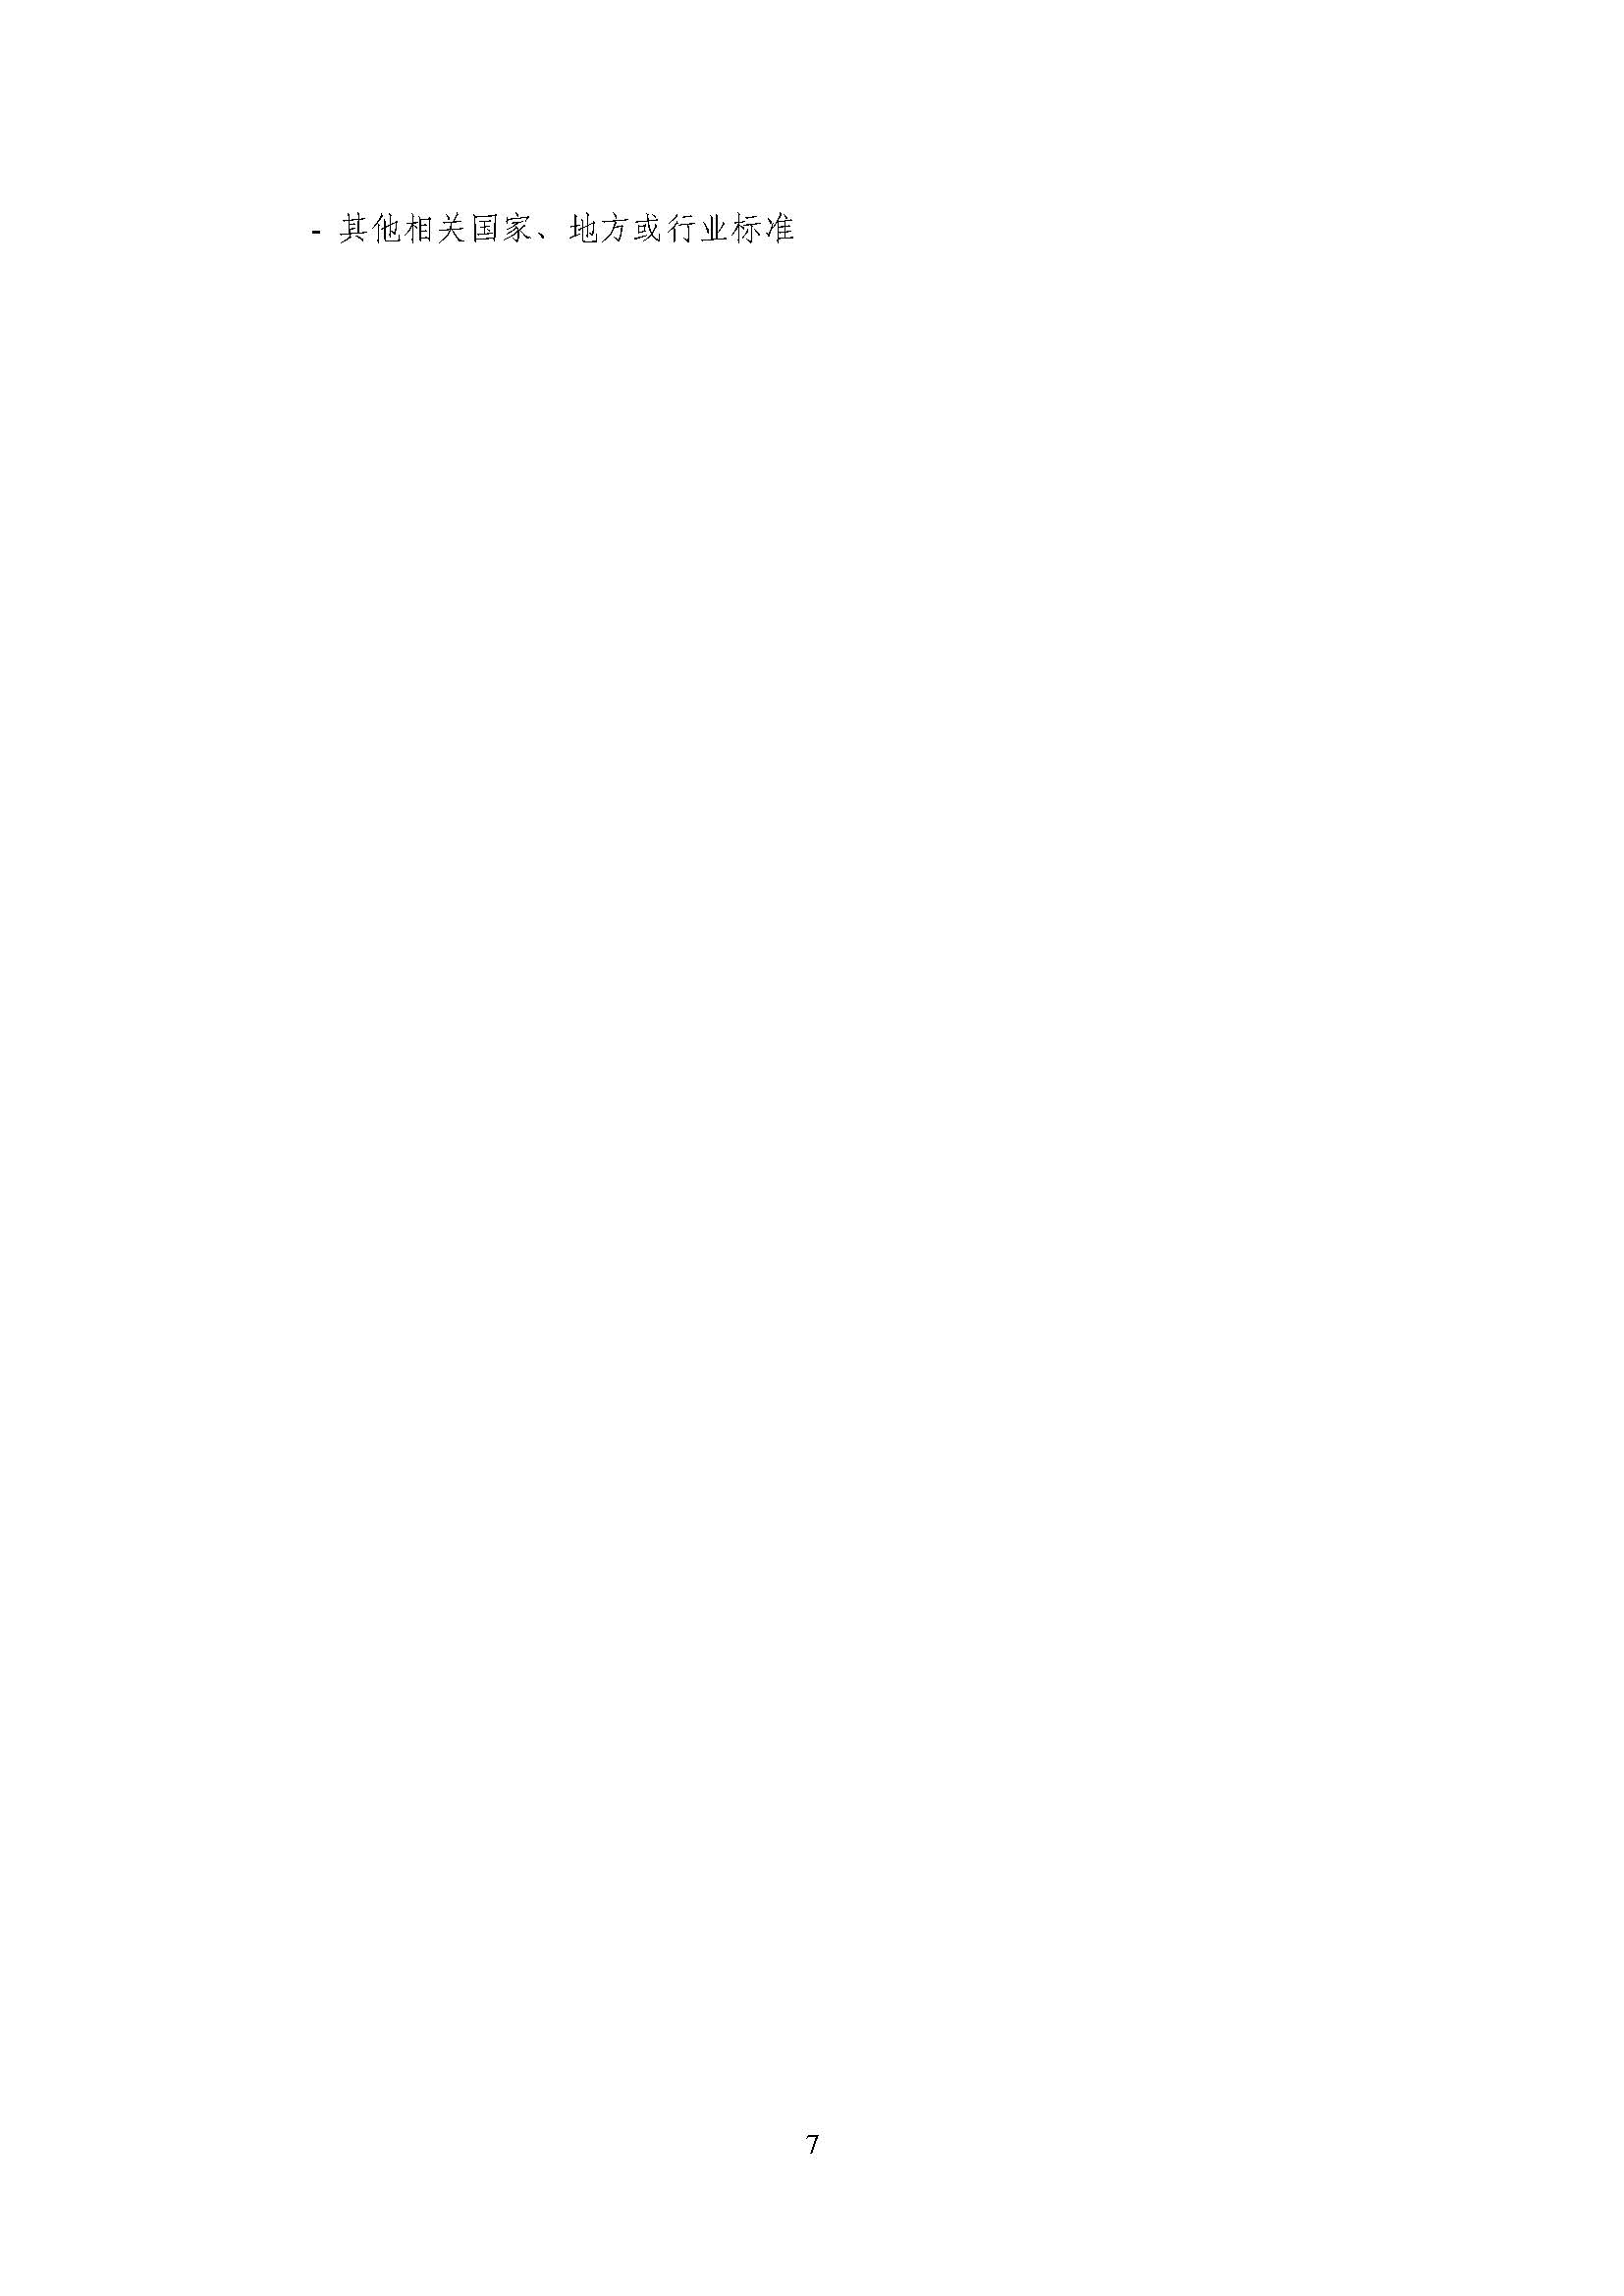 浙江正泰电气科技有限公司2021年度温室气体排放核查报告 - 仅华东园区_页面_08.jpg